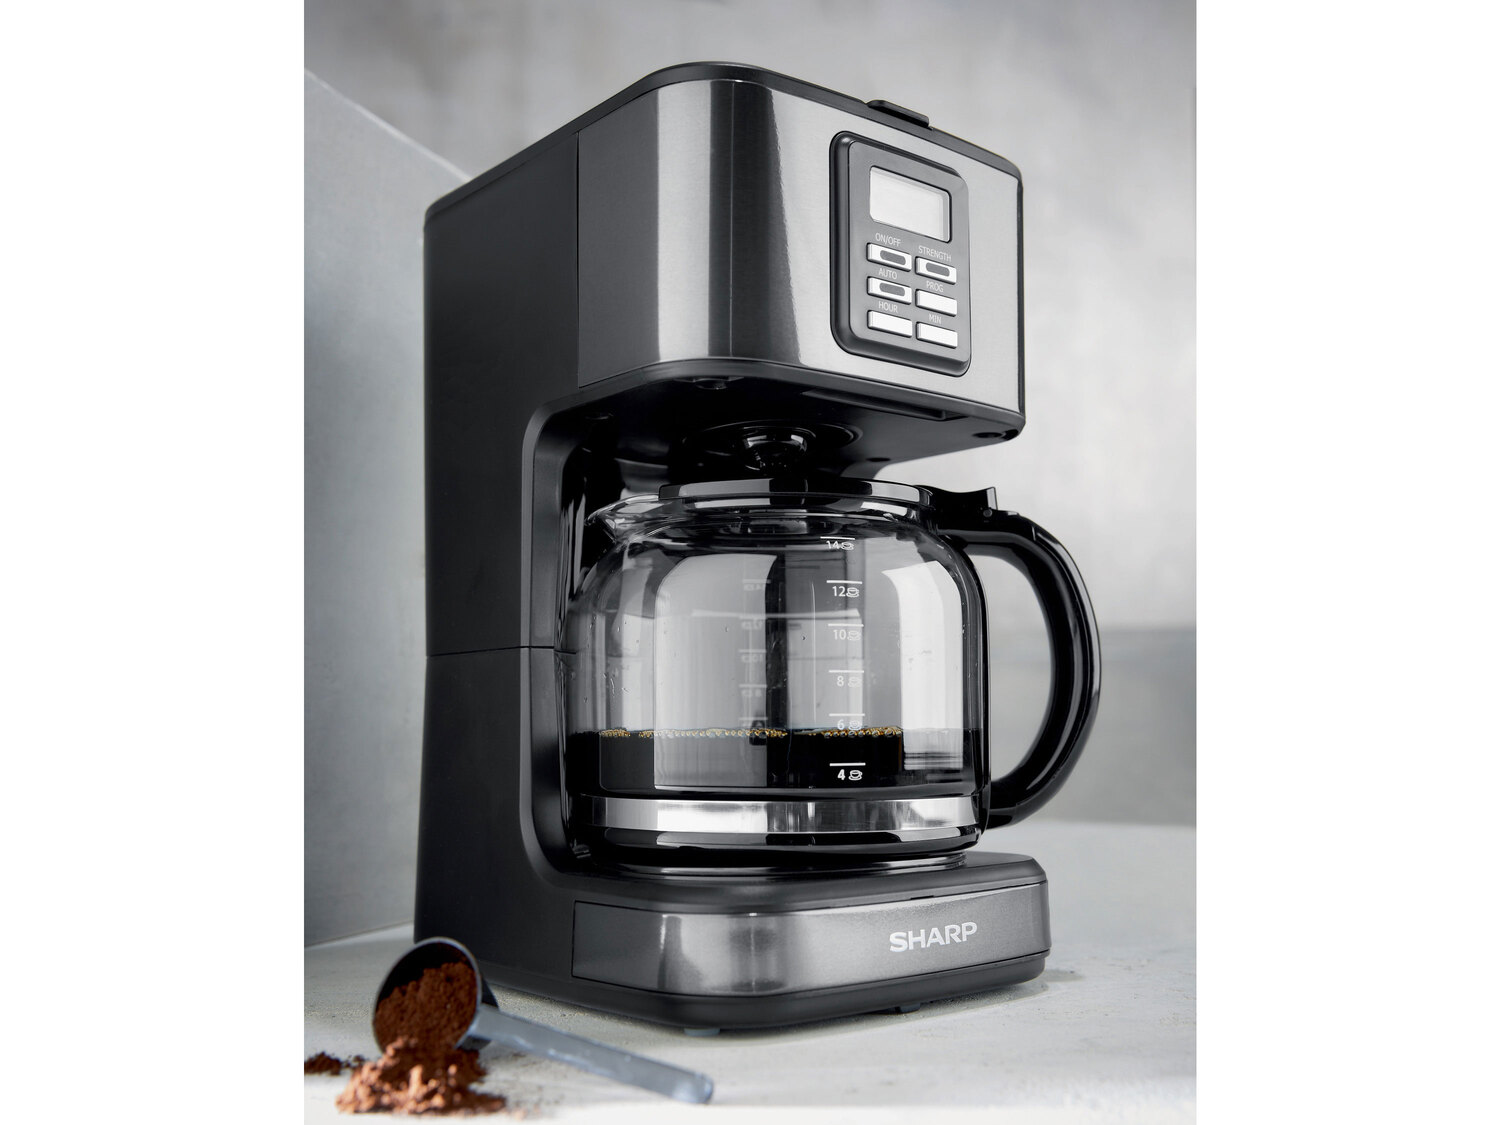 SHARP Ekspres do kawy 900 W , cena 159,00 PLN 
- aromatyczna kawa w Twoim domu
- ...